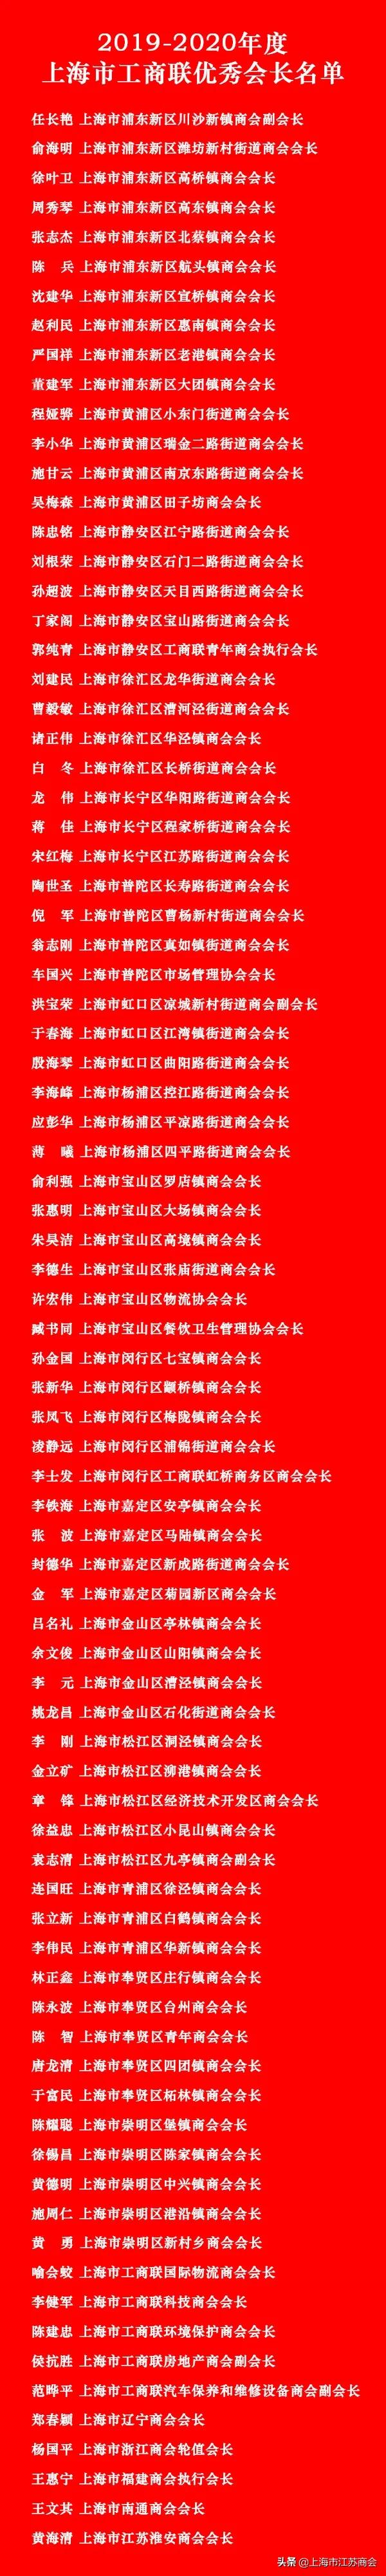 上海市江苏商会荣获2019-2020上海市工商联“四好”商会